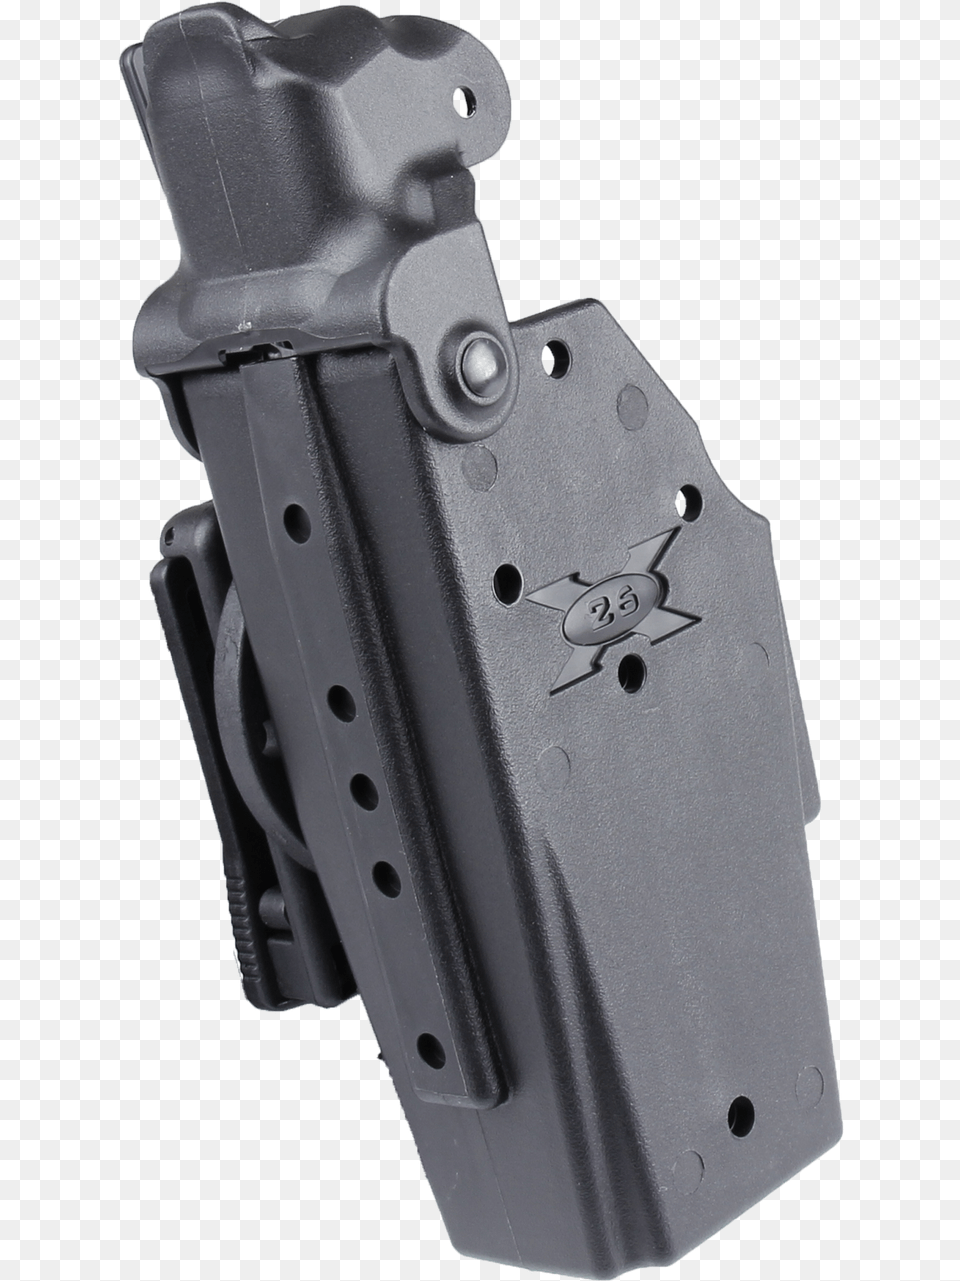 Blade Tech Taser X 26 Holster Handgun Holster, Firearm, Gun, Weapon Free Transparent Png